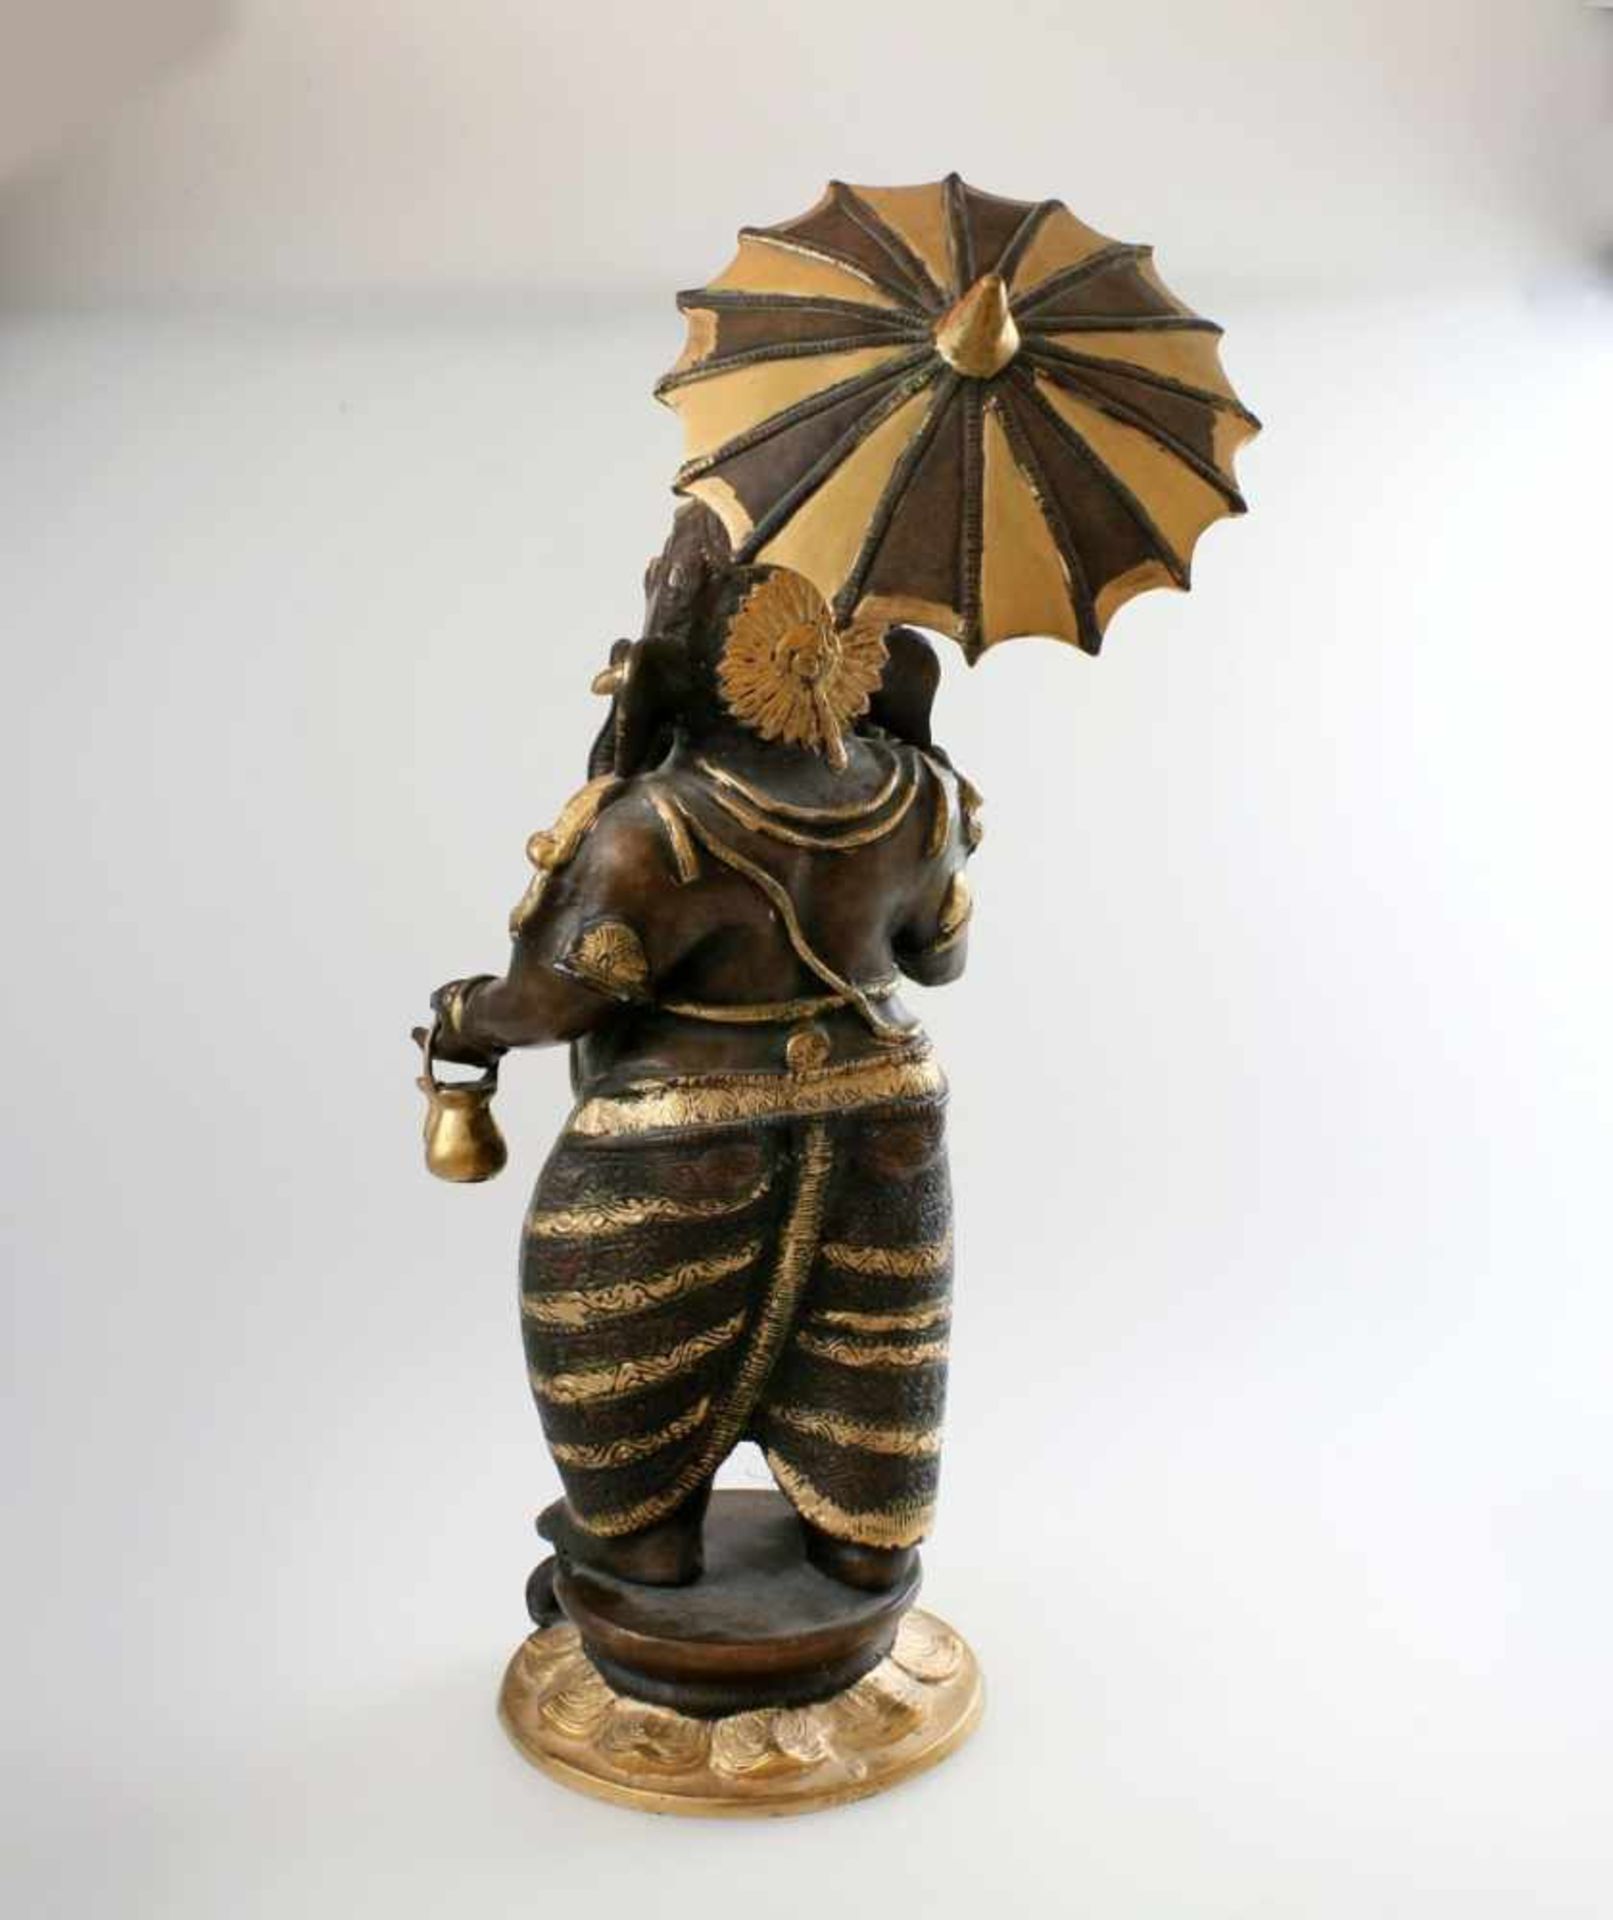 Ganesha mit Schirm - Nordindien In der rechten Schirm, in der linken Hand Teegefäß haltend, - Bild 3 aus 6